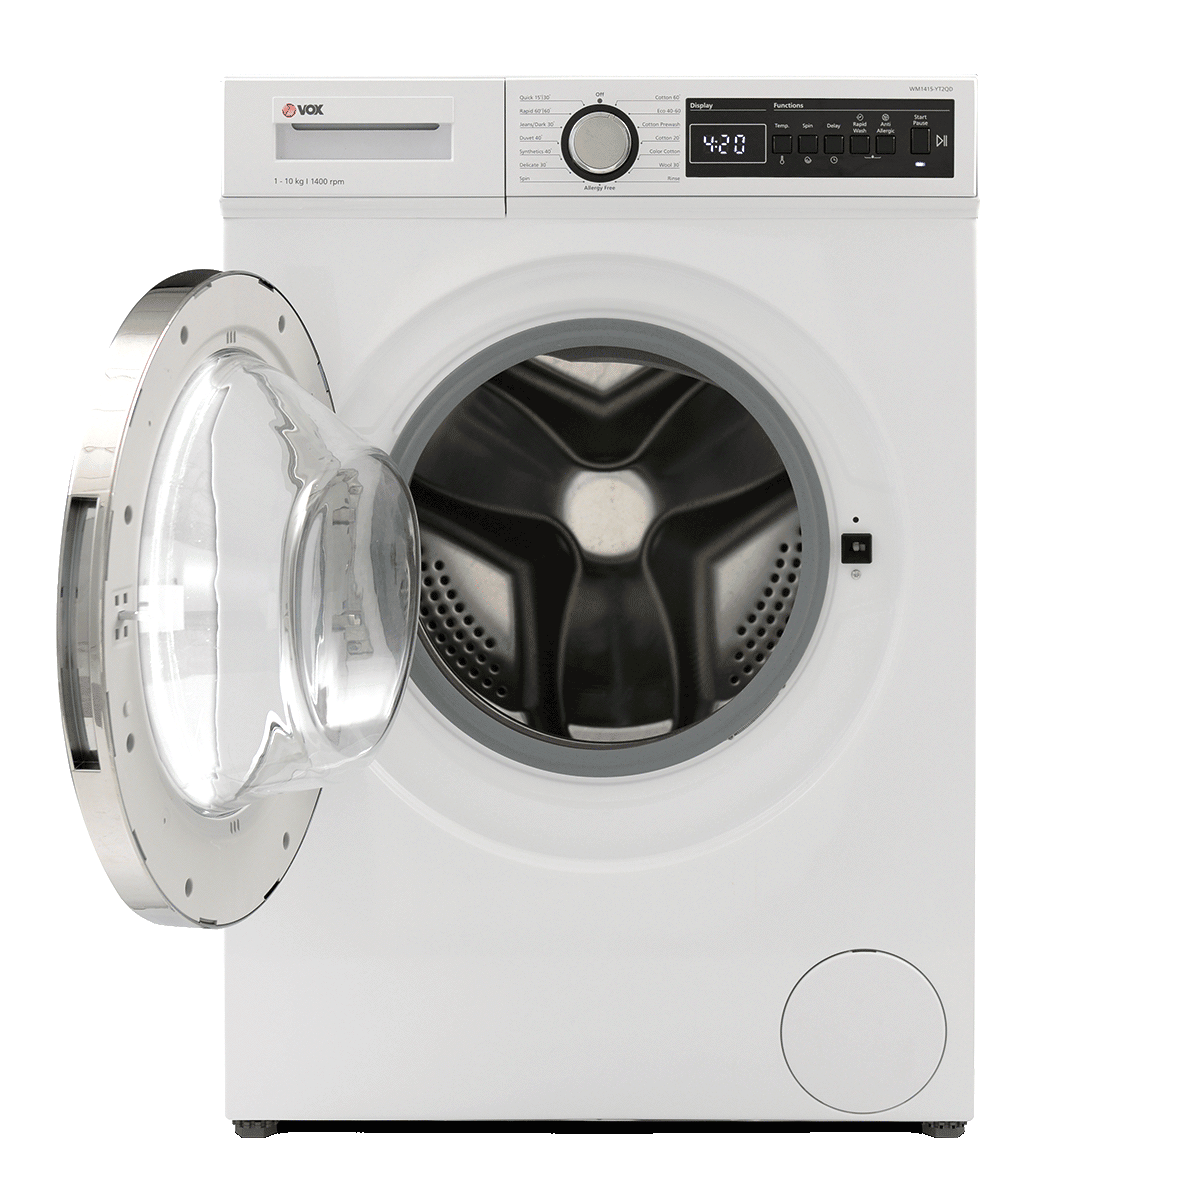 Washing machine WM1415-YT2QD 